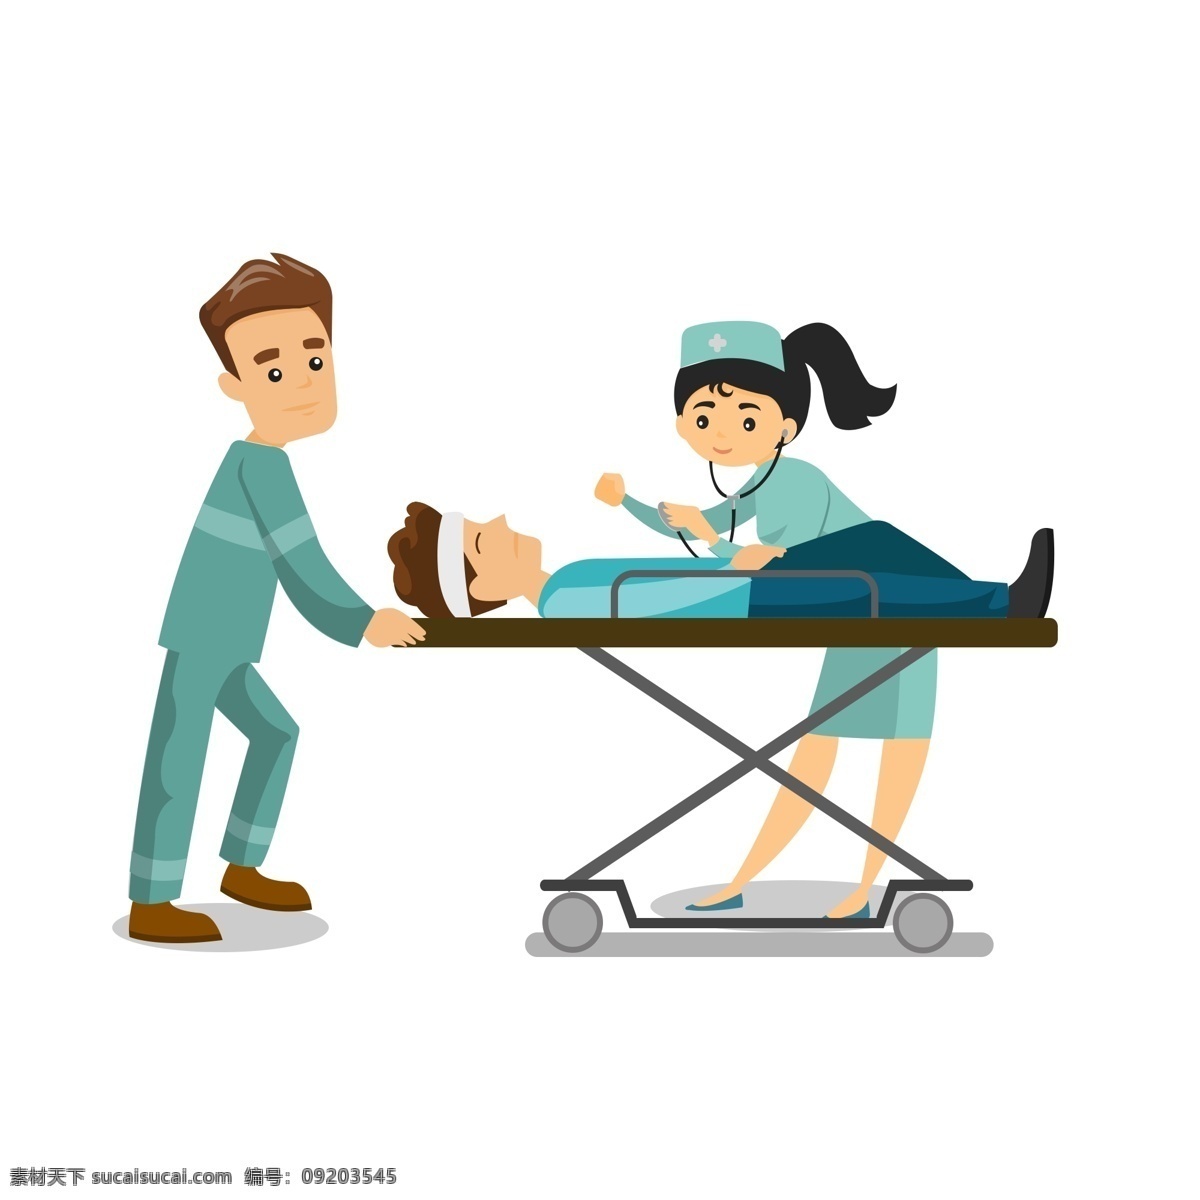 扁平化 急救 场景 商用 元素 卡通 插画 医生 护士 手绘 病人 担架